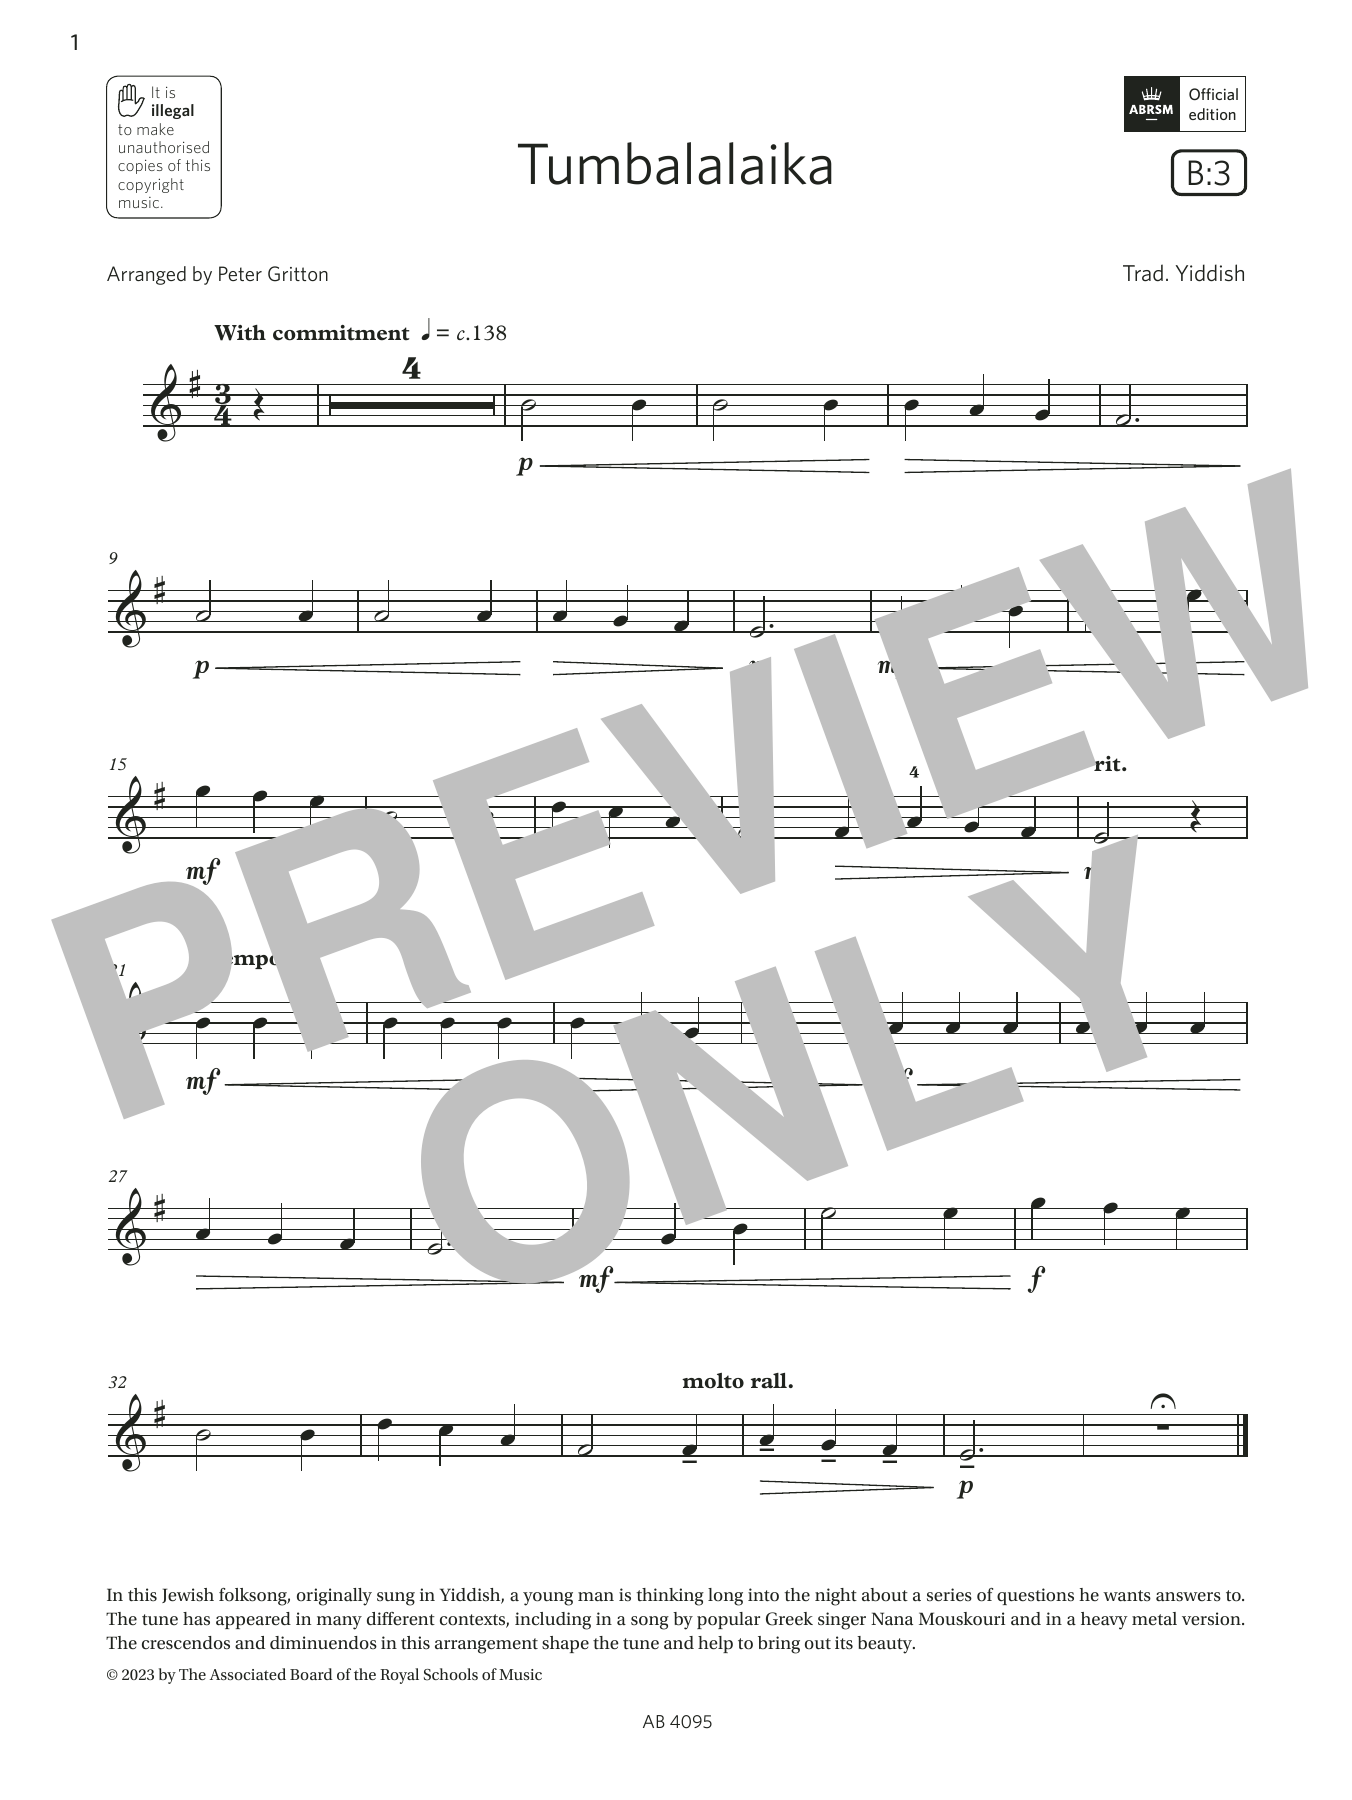 Trad. Yiddish Tumbalalaika (Grade 1, B3, from the ABRSM Violin Syllabus from 2024) Sheet Music Notes & Chords for Violin Solo - Download or Print PDF